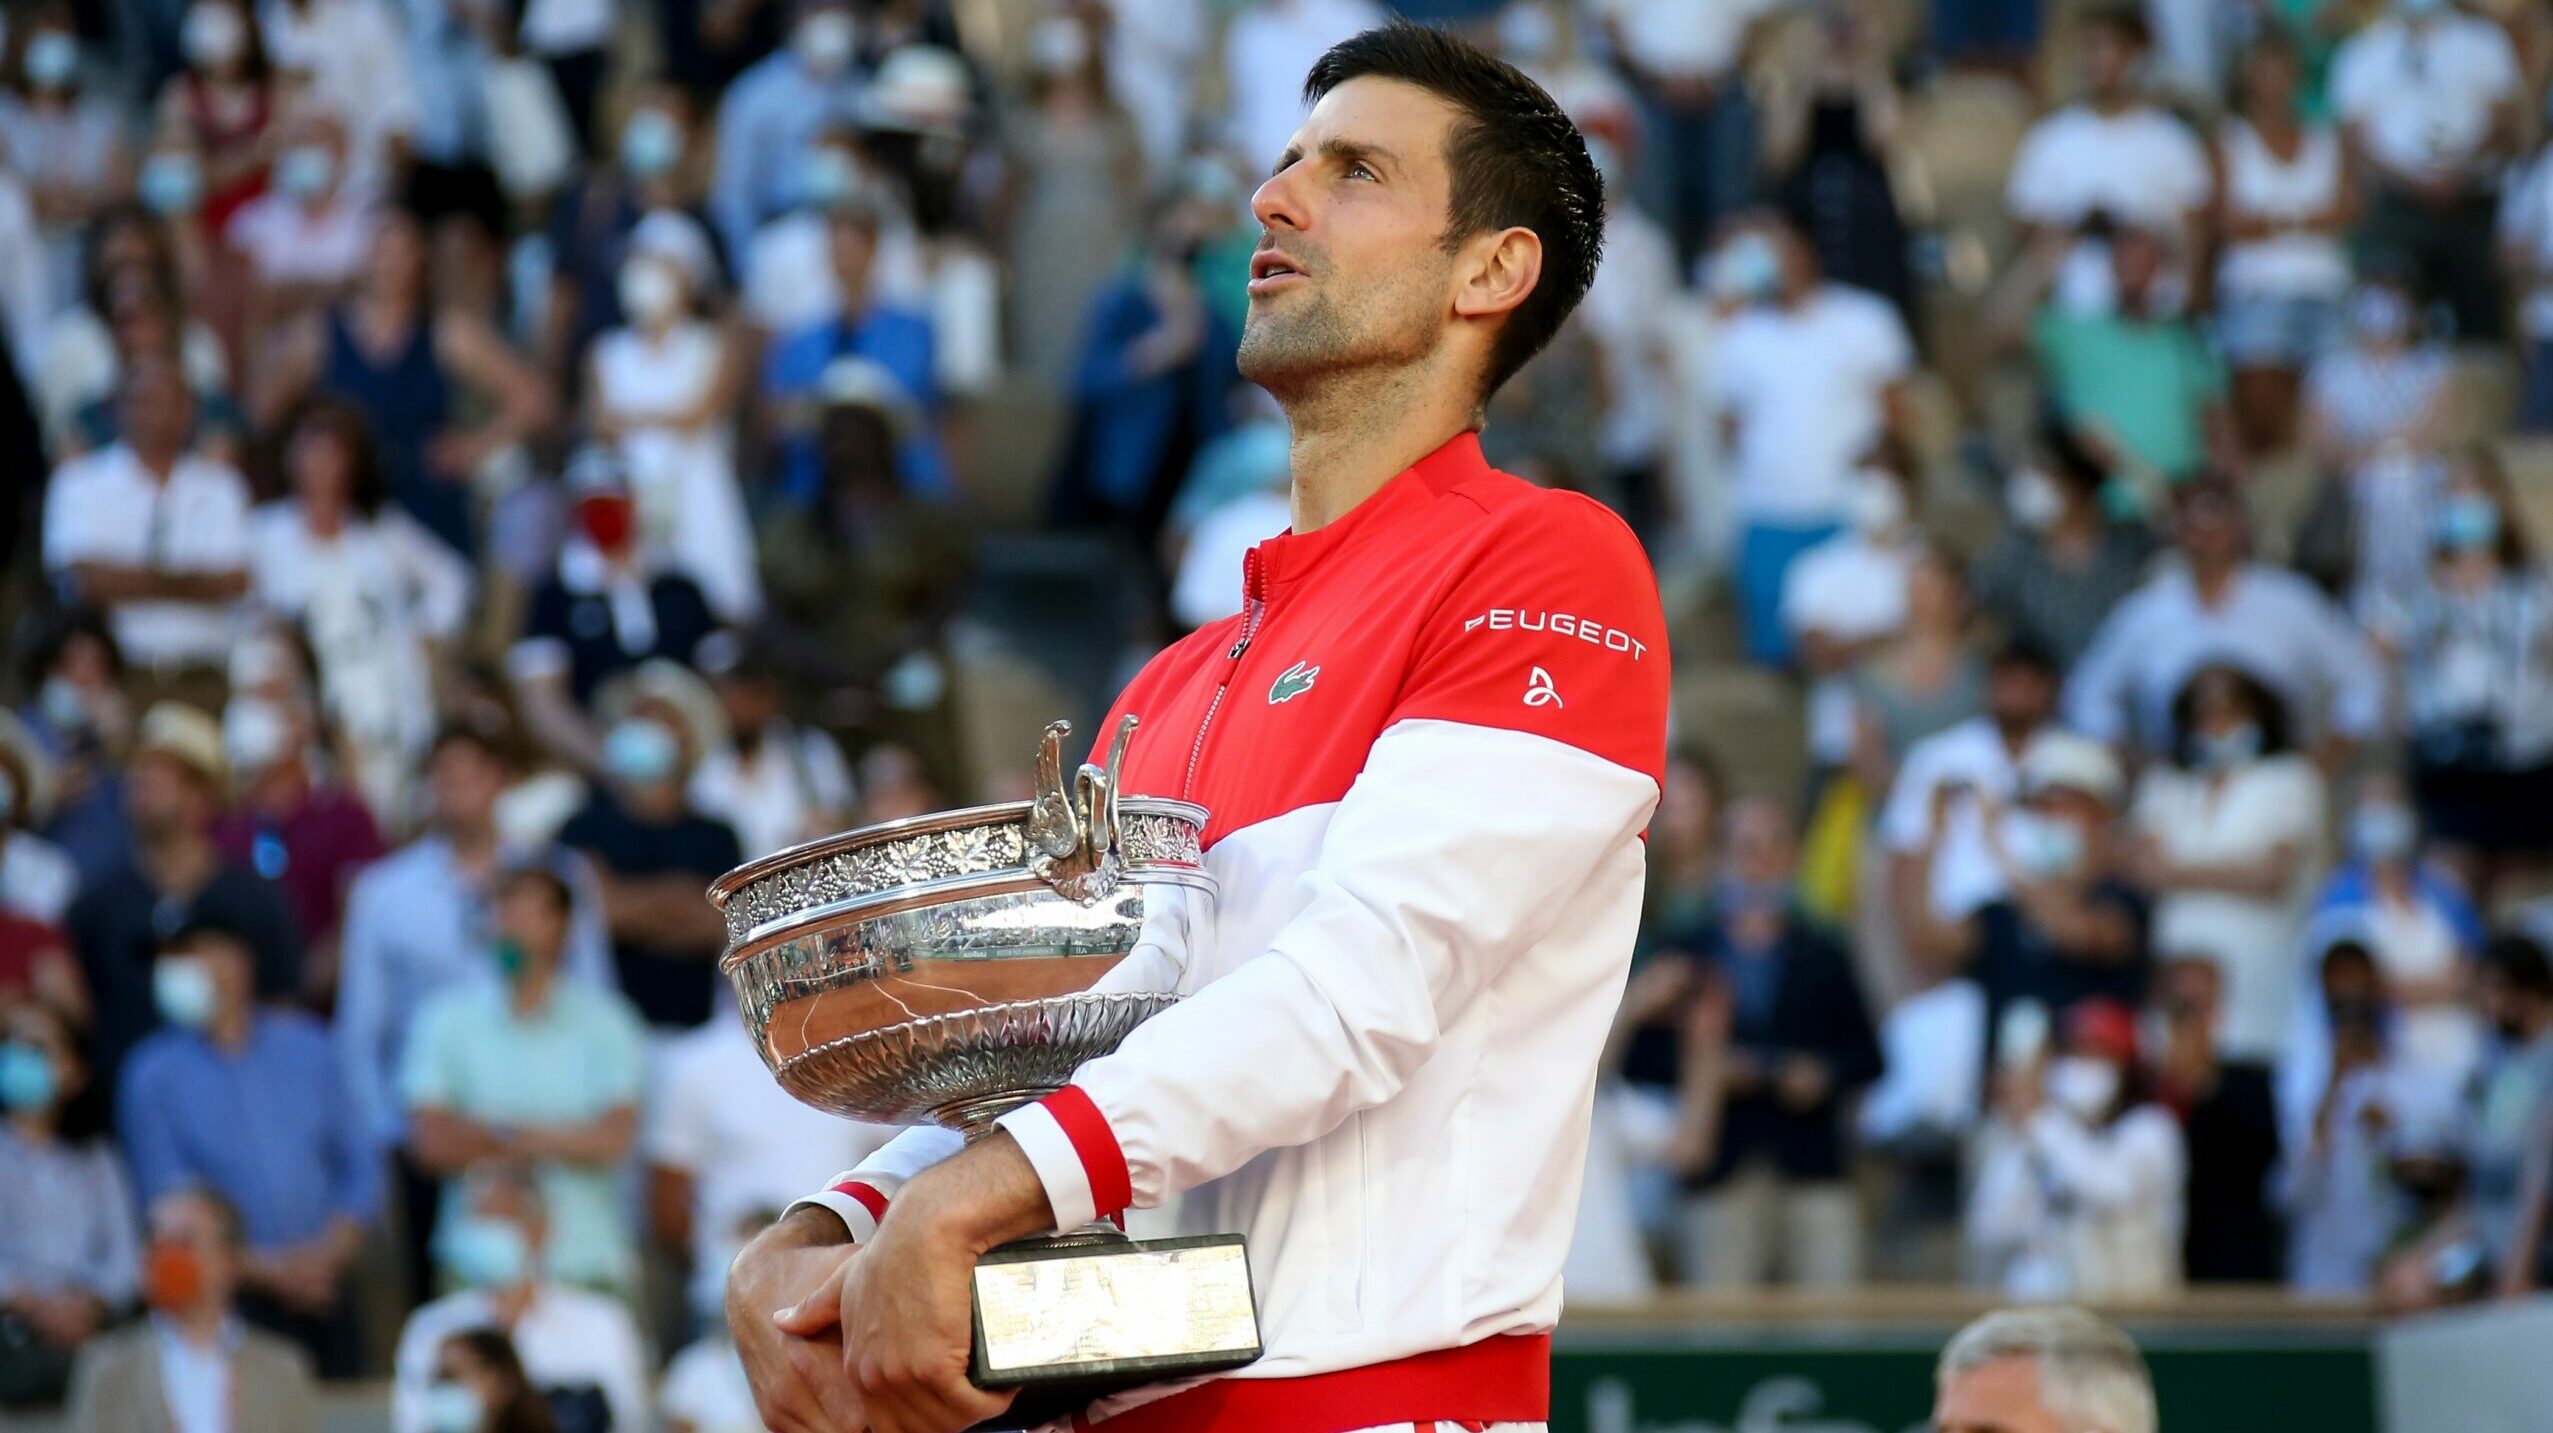 Francia rectifica y no permitirá que Djokovic participe en Roland Garros si no está vacunado